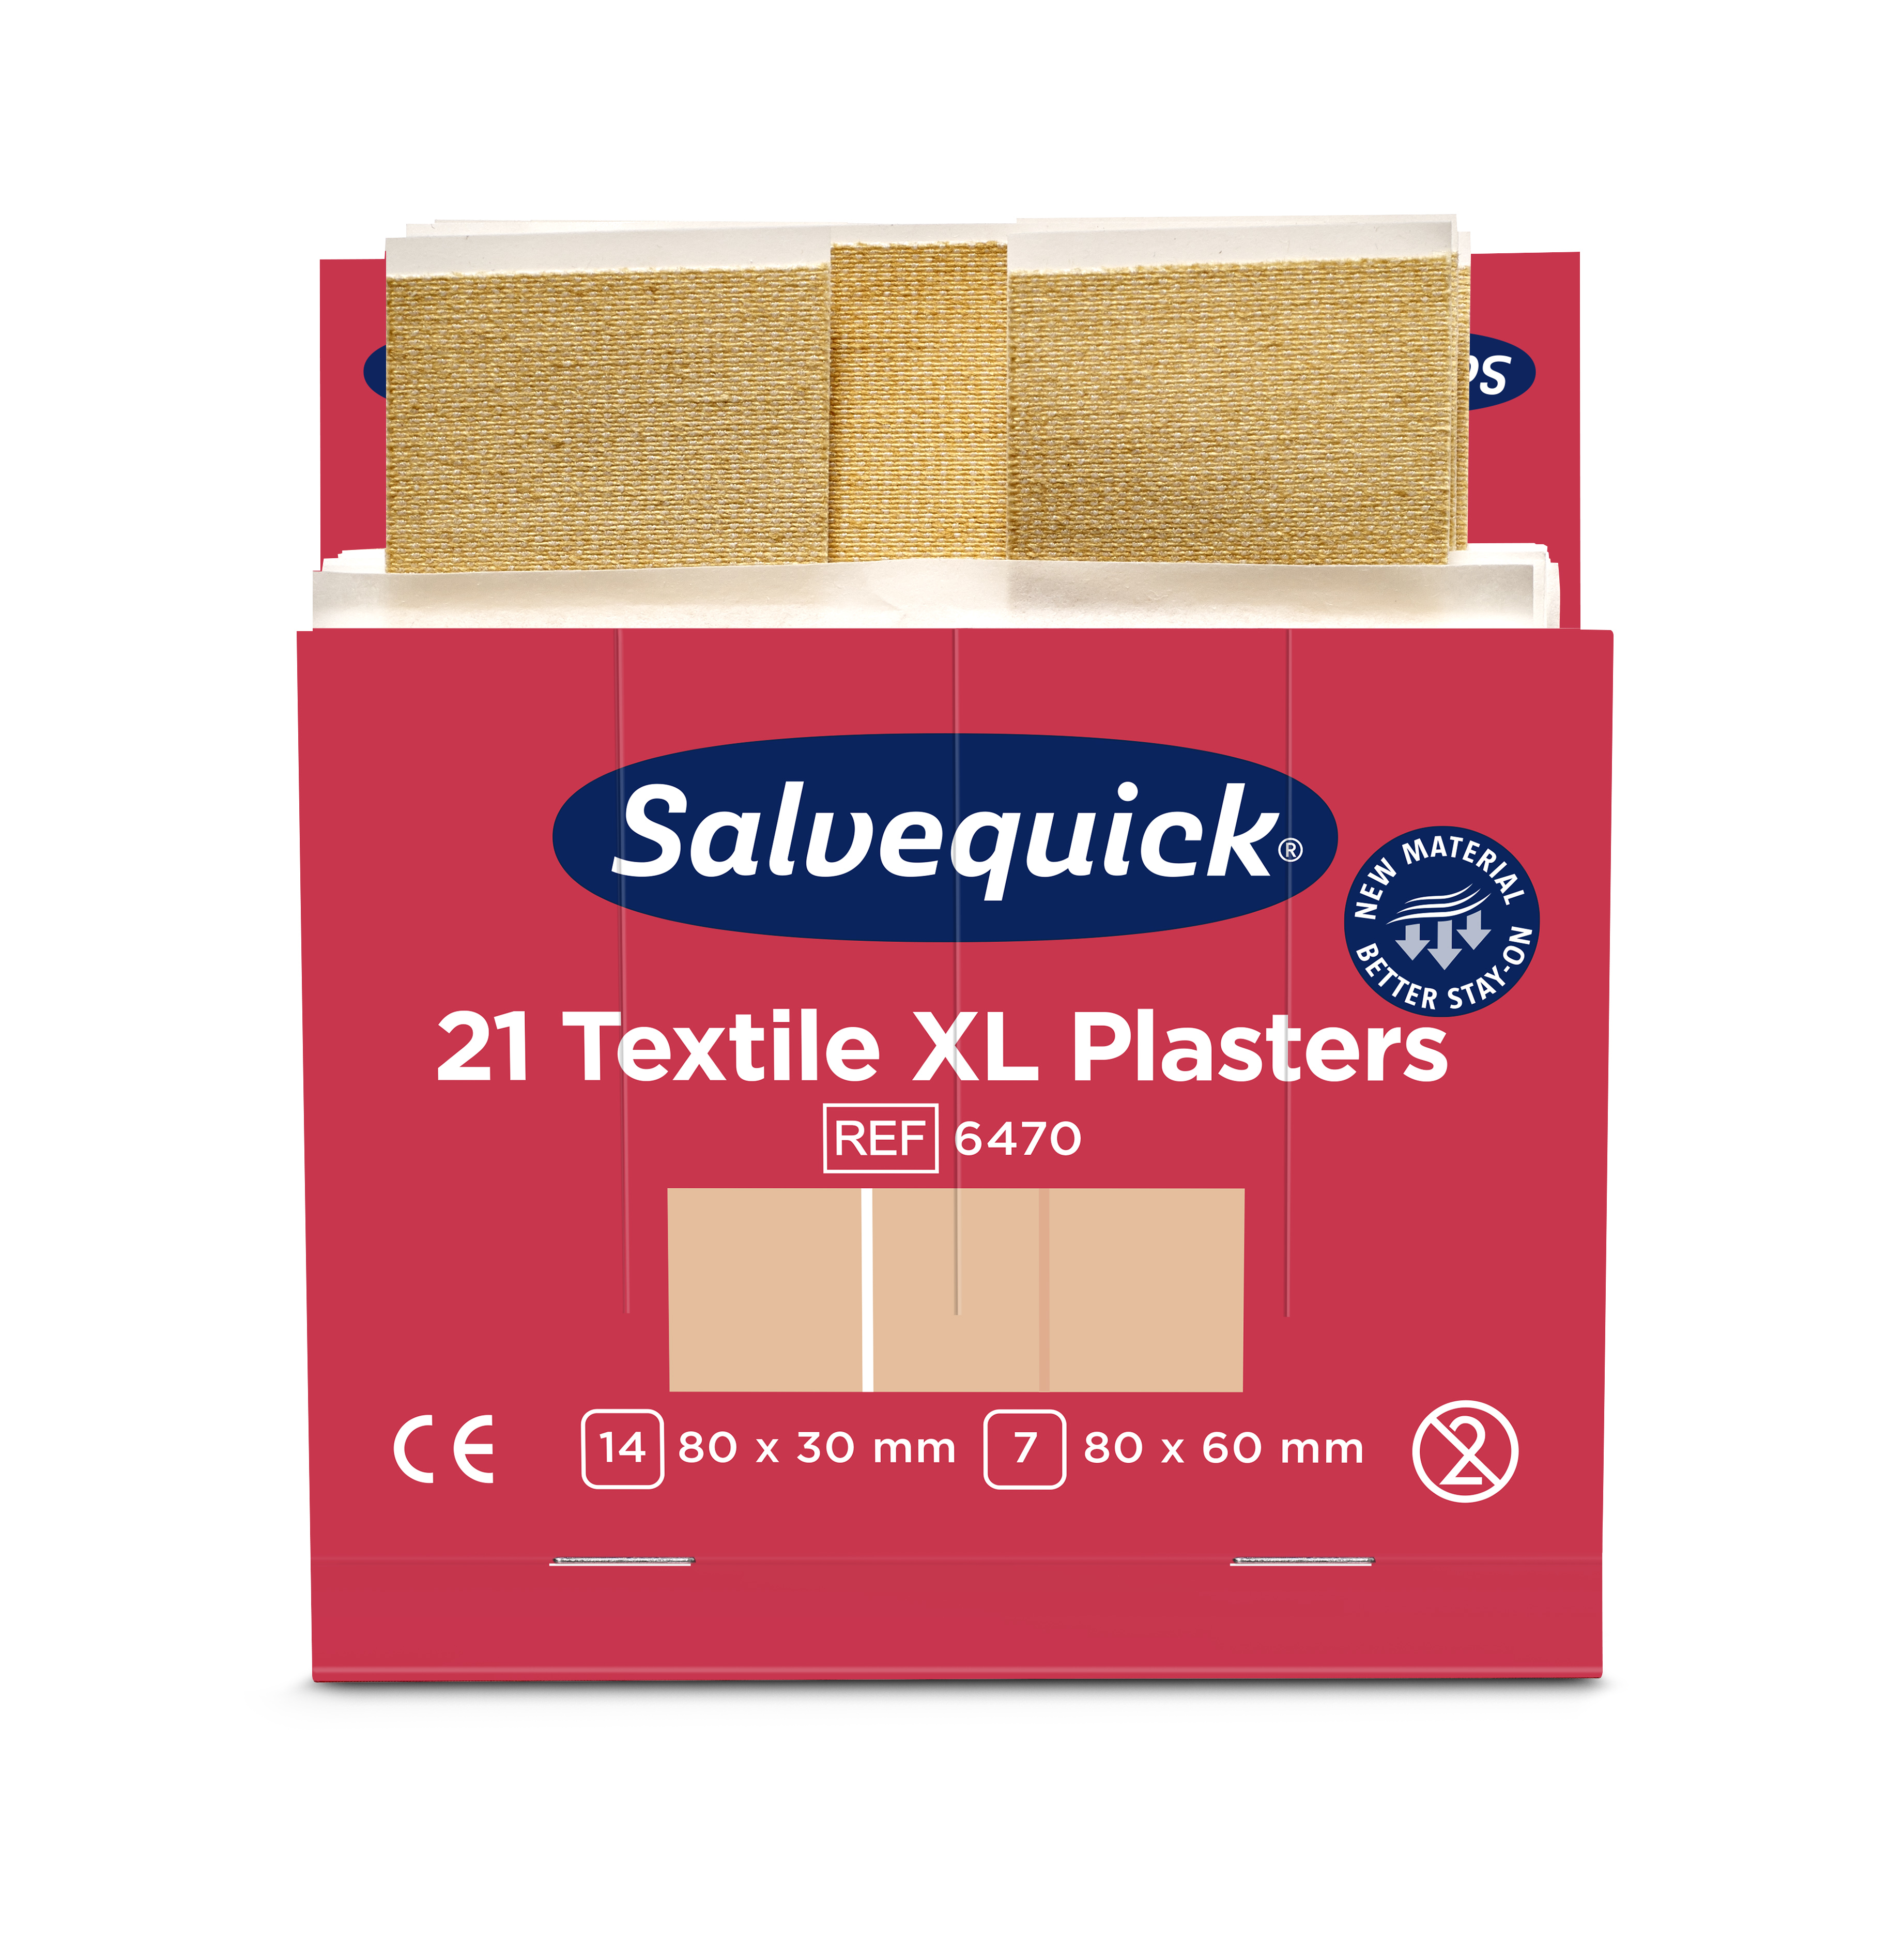 CEDERROTH Salvequick Textilpflaster XL - Packung à 6 x 21 Stück